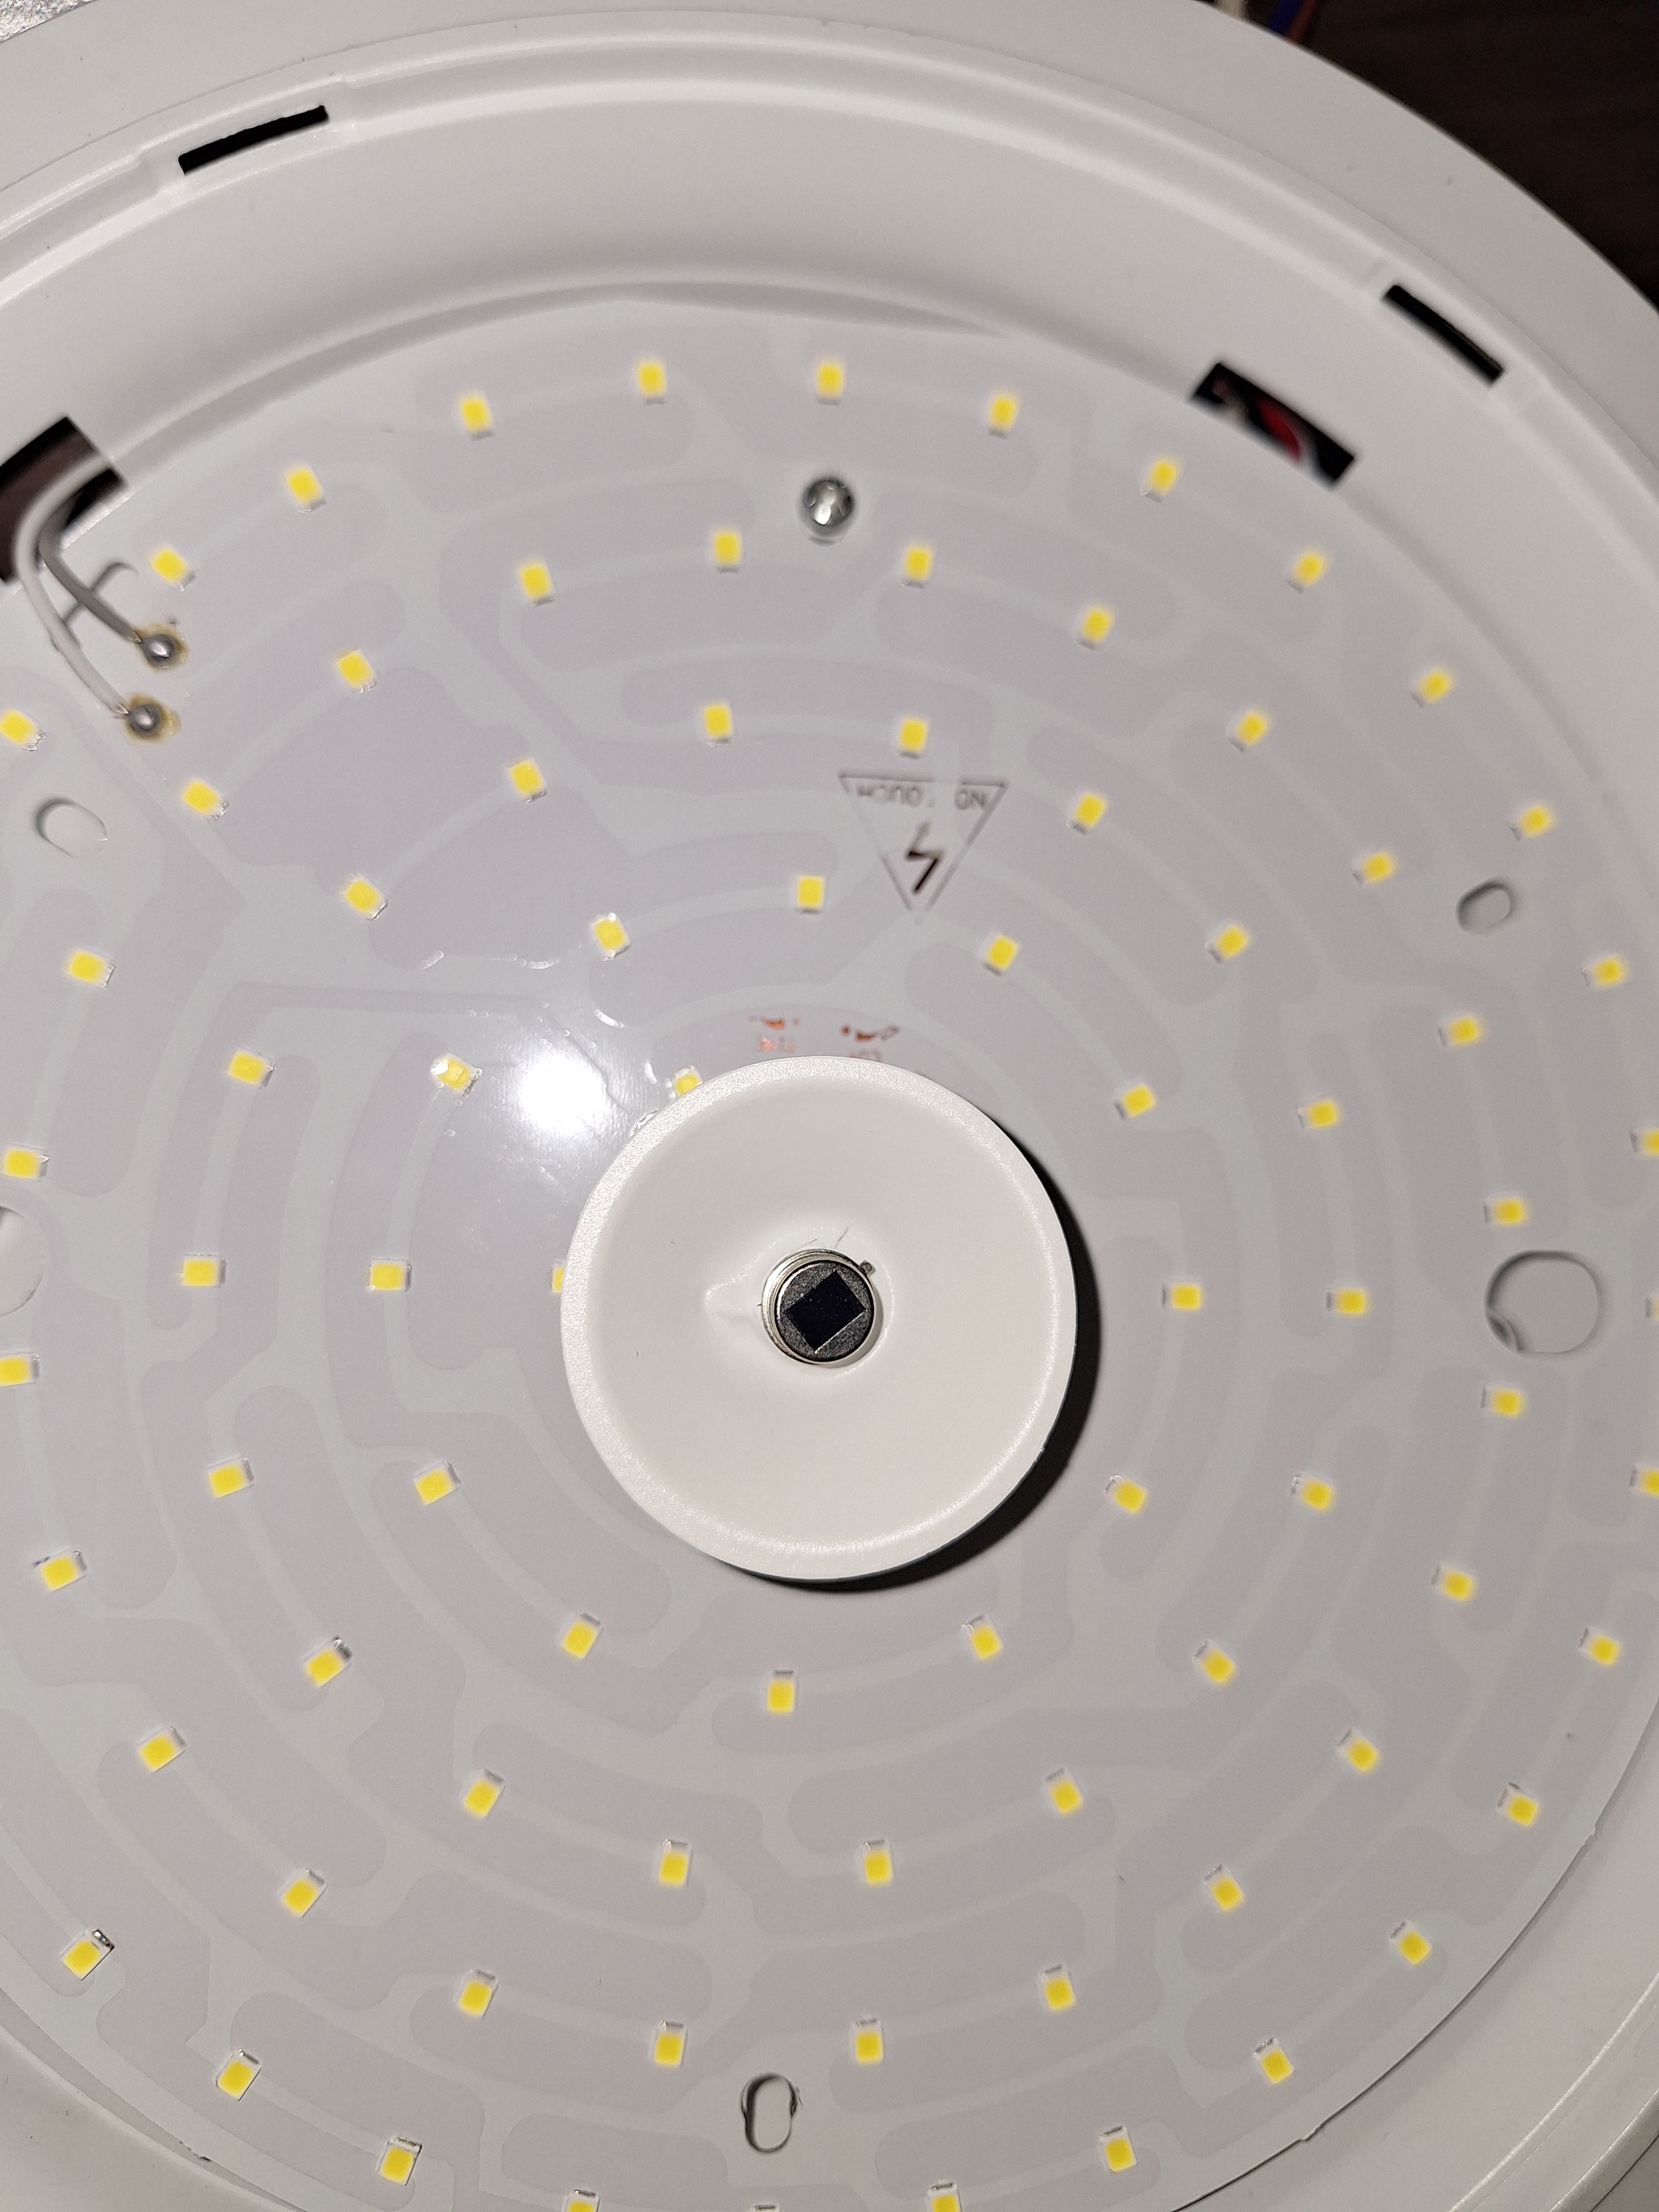 Как отключить оптико-акустический датчик на светильнике | Пикабу